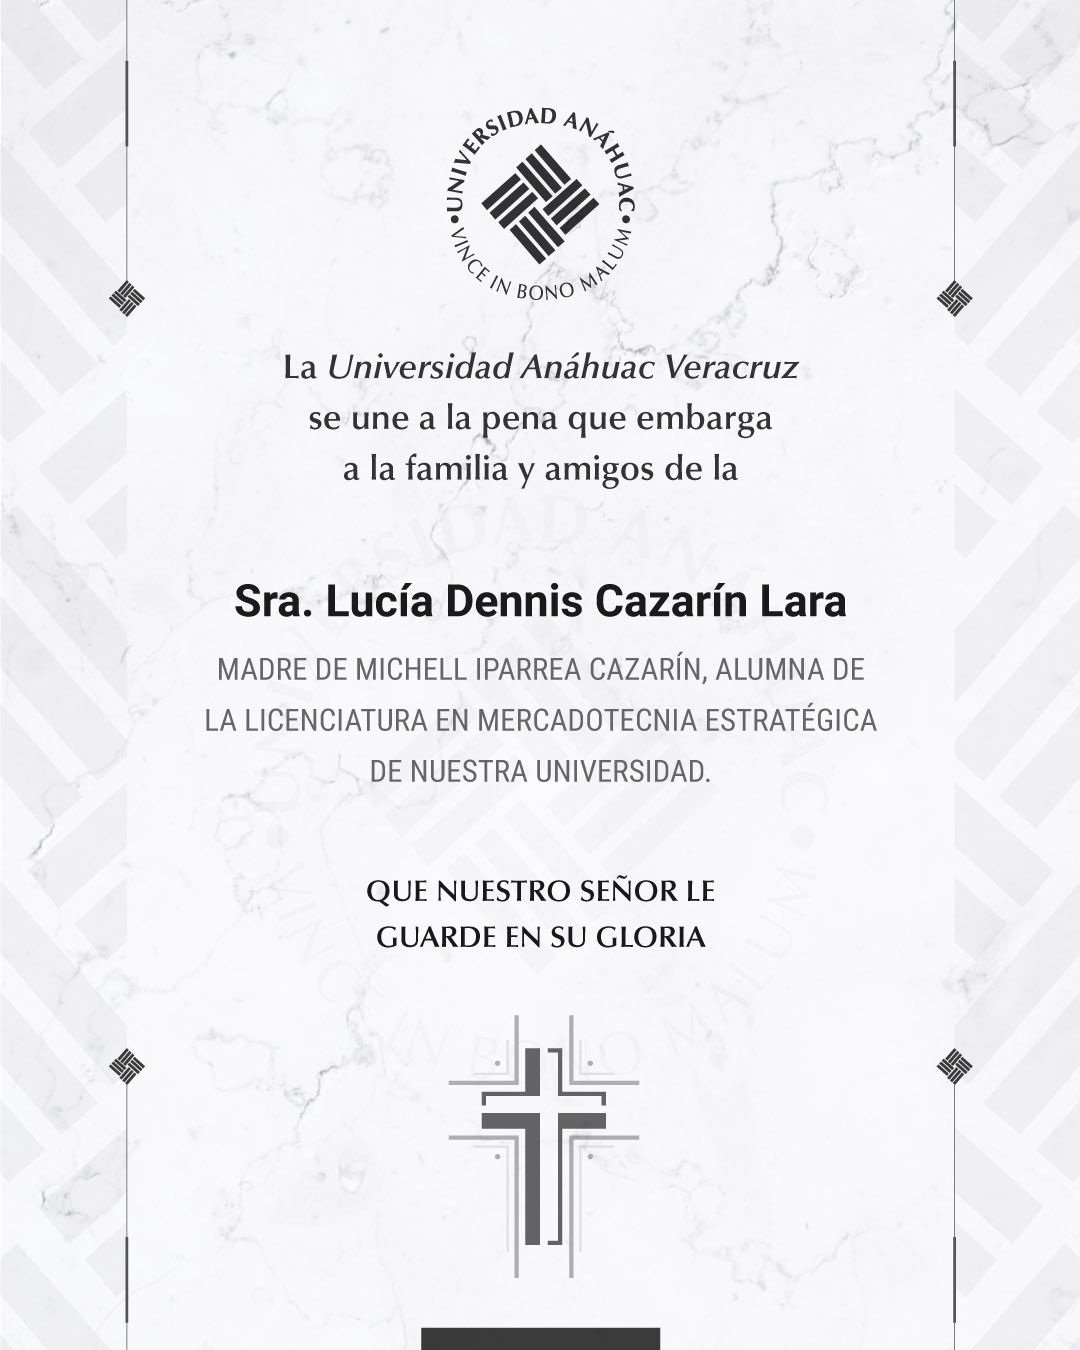 14 / 18 - Sra. Lucía Dennis Cazarín Lara